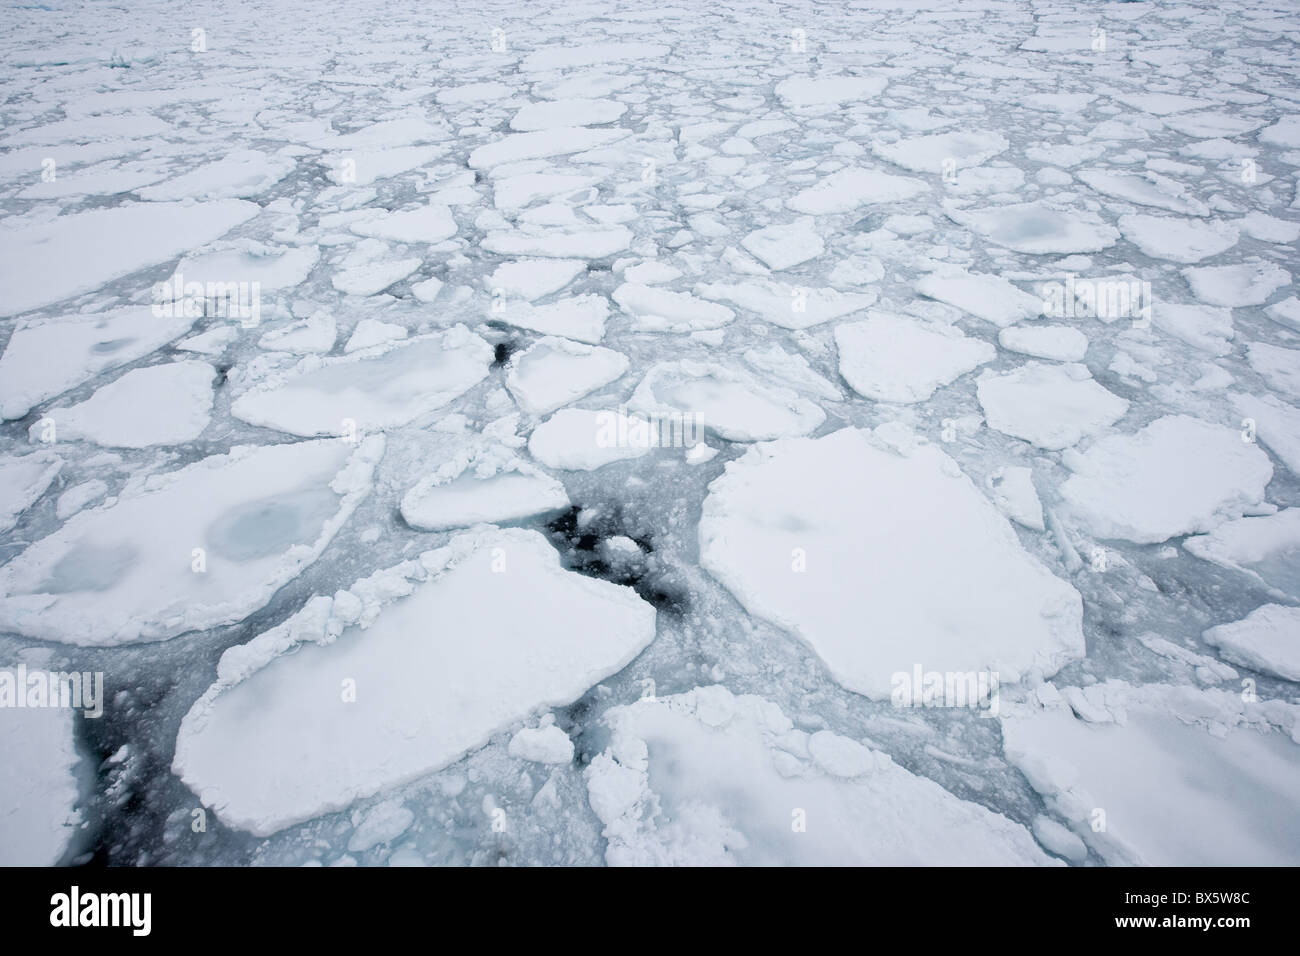 Banc de glace, glaces en dérive, le Groenland, l'Arctique, les régions polaires Banque D'Images